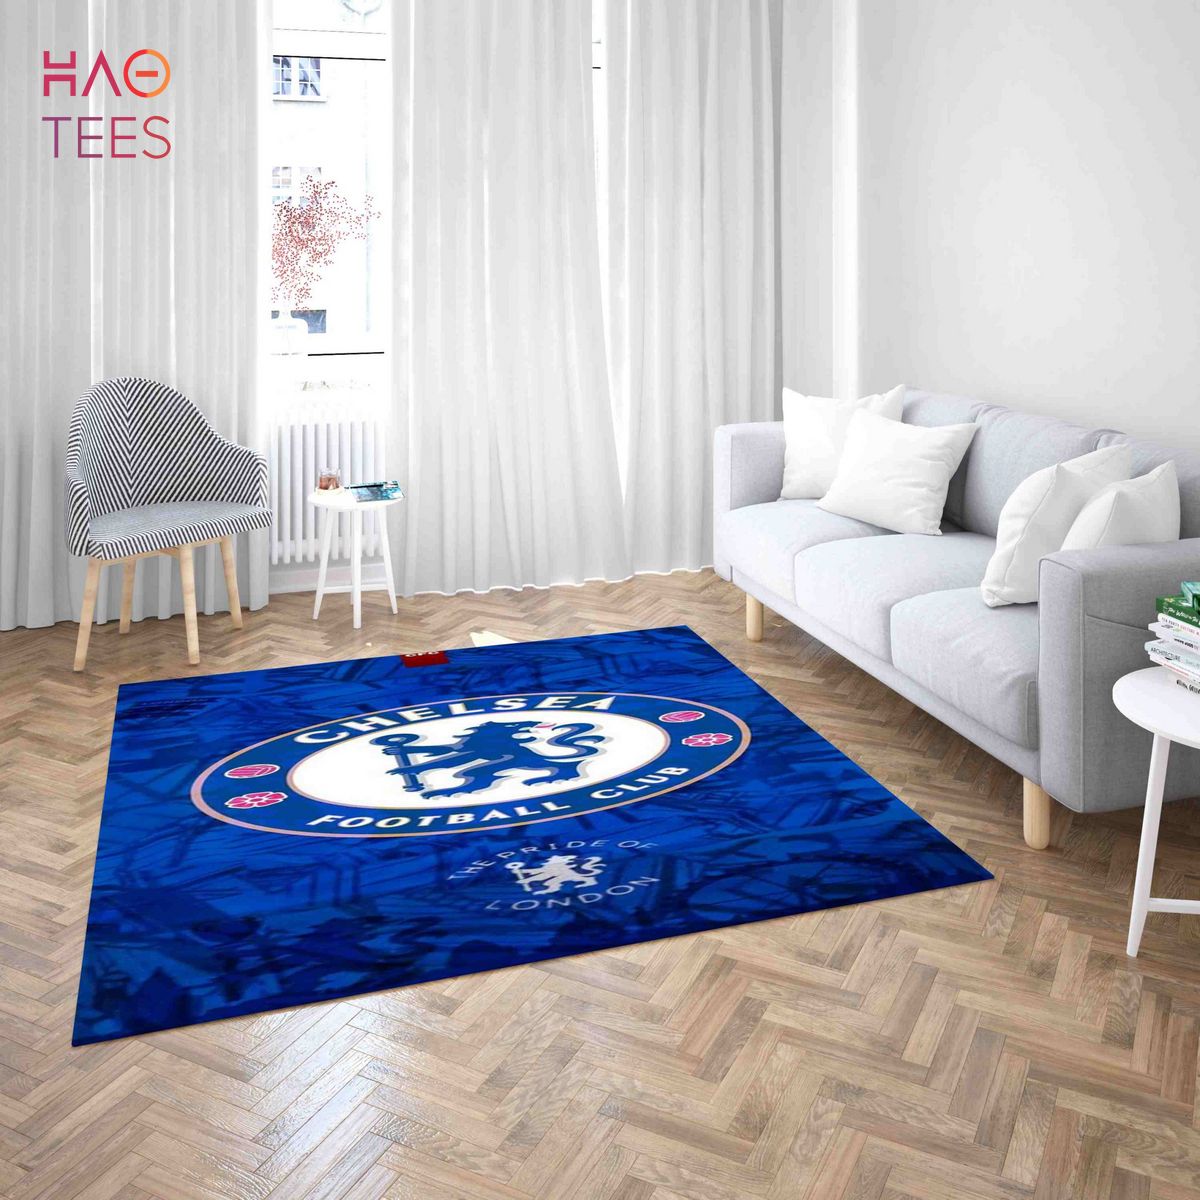 BEST Chelsea Football Club Carpet Living Room Rugs